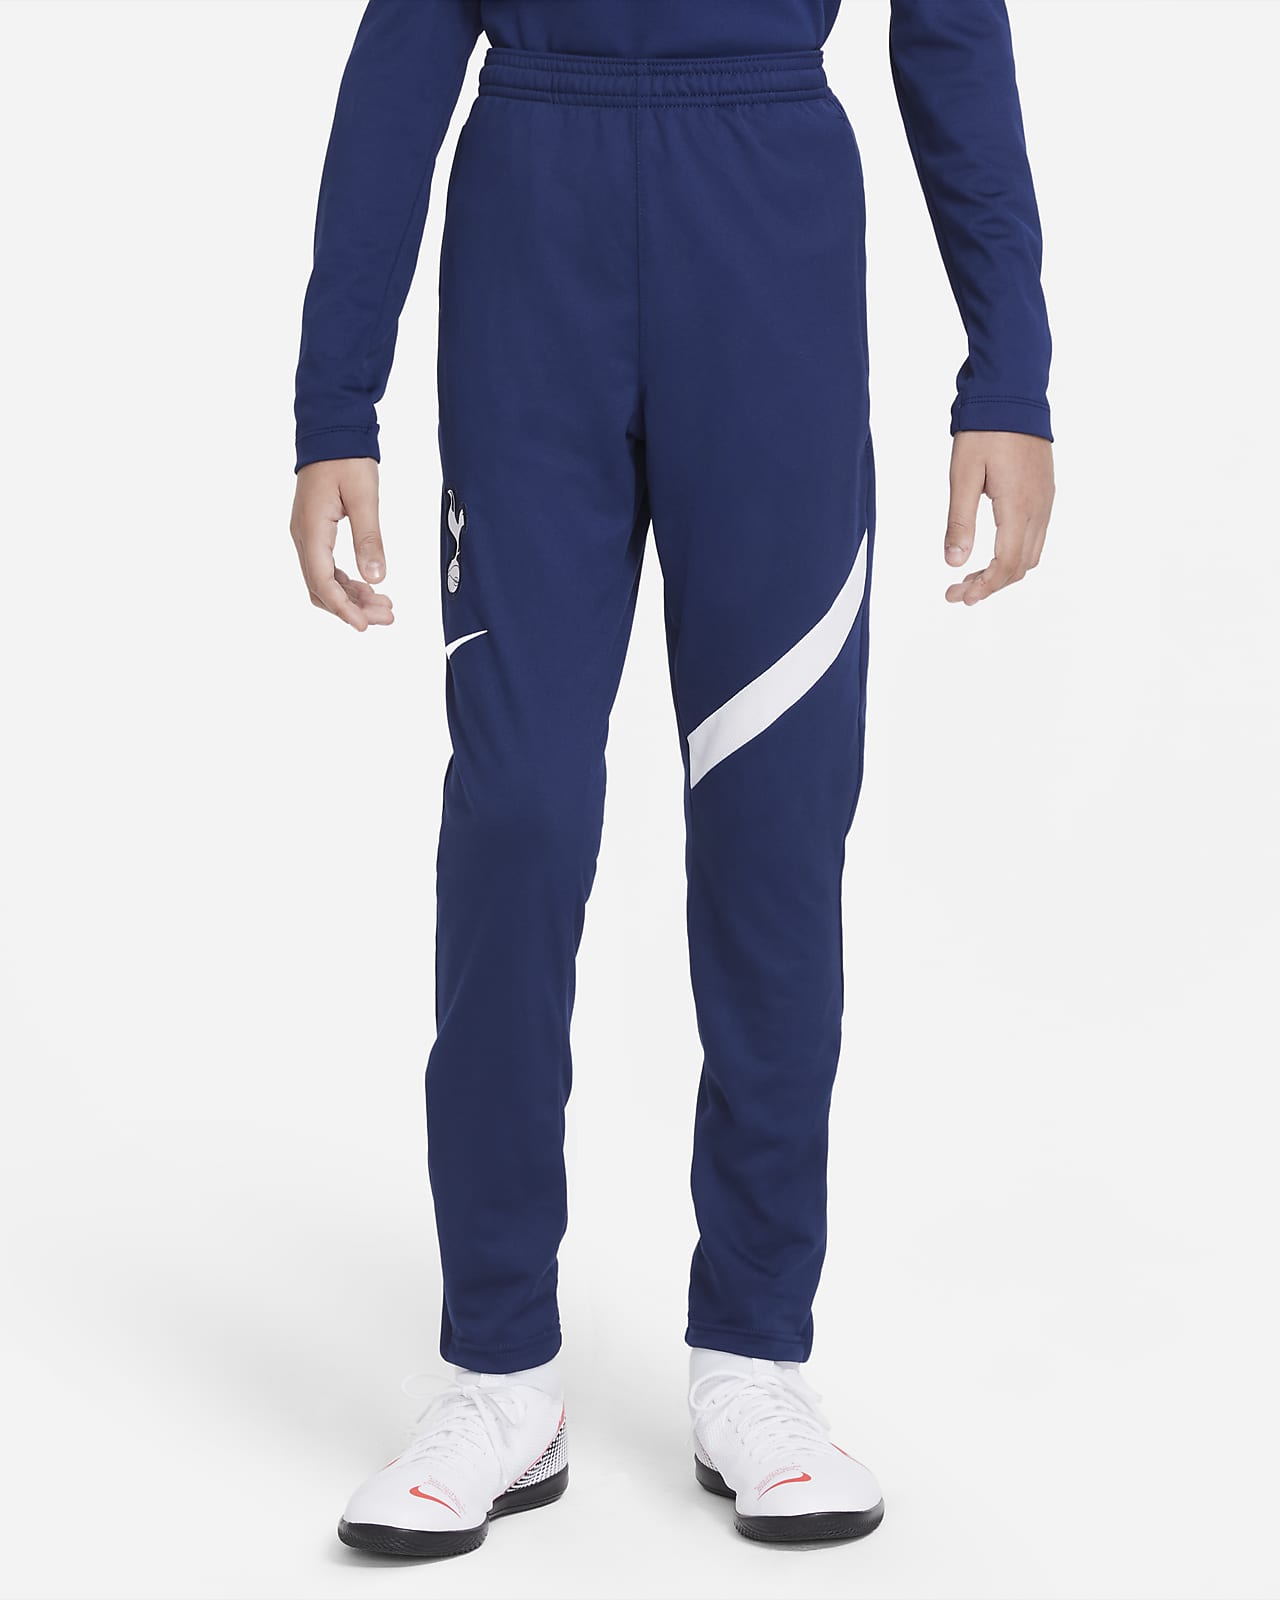 Nike Track Pant | Boys XLarge Sweatpants